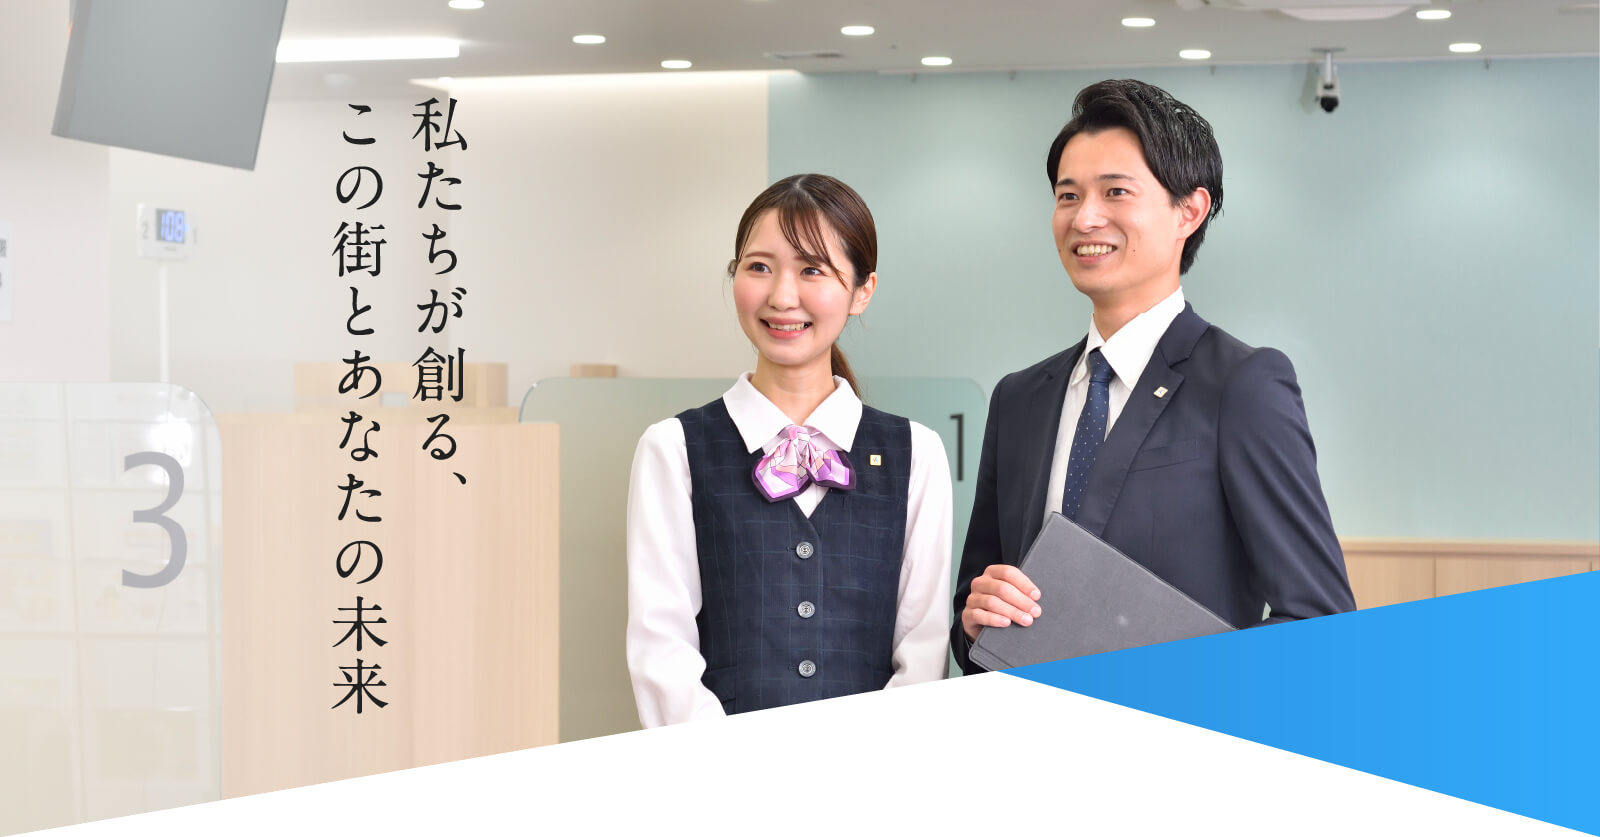 大阪厚生信用金庫 RECRUIT 「私たちが創る、この街とあなたの未来」